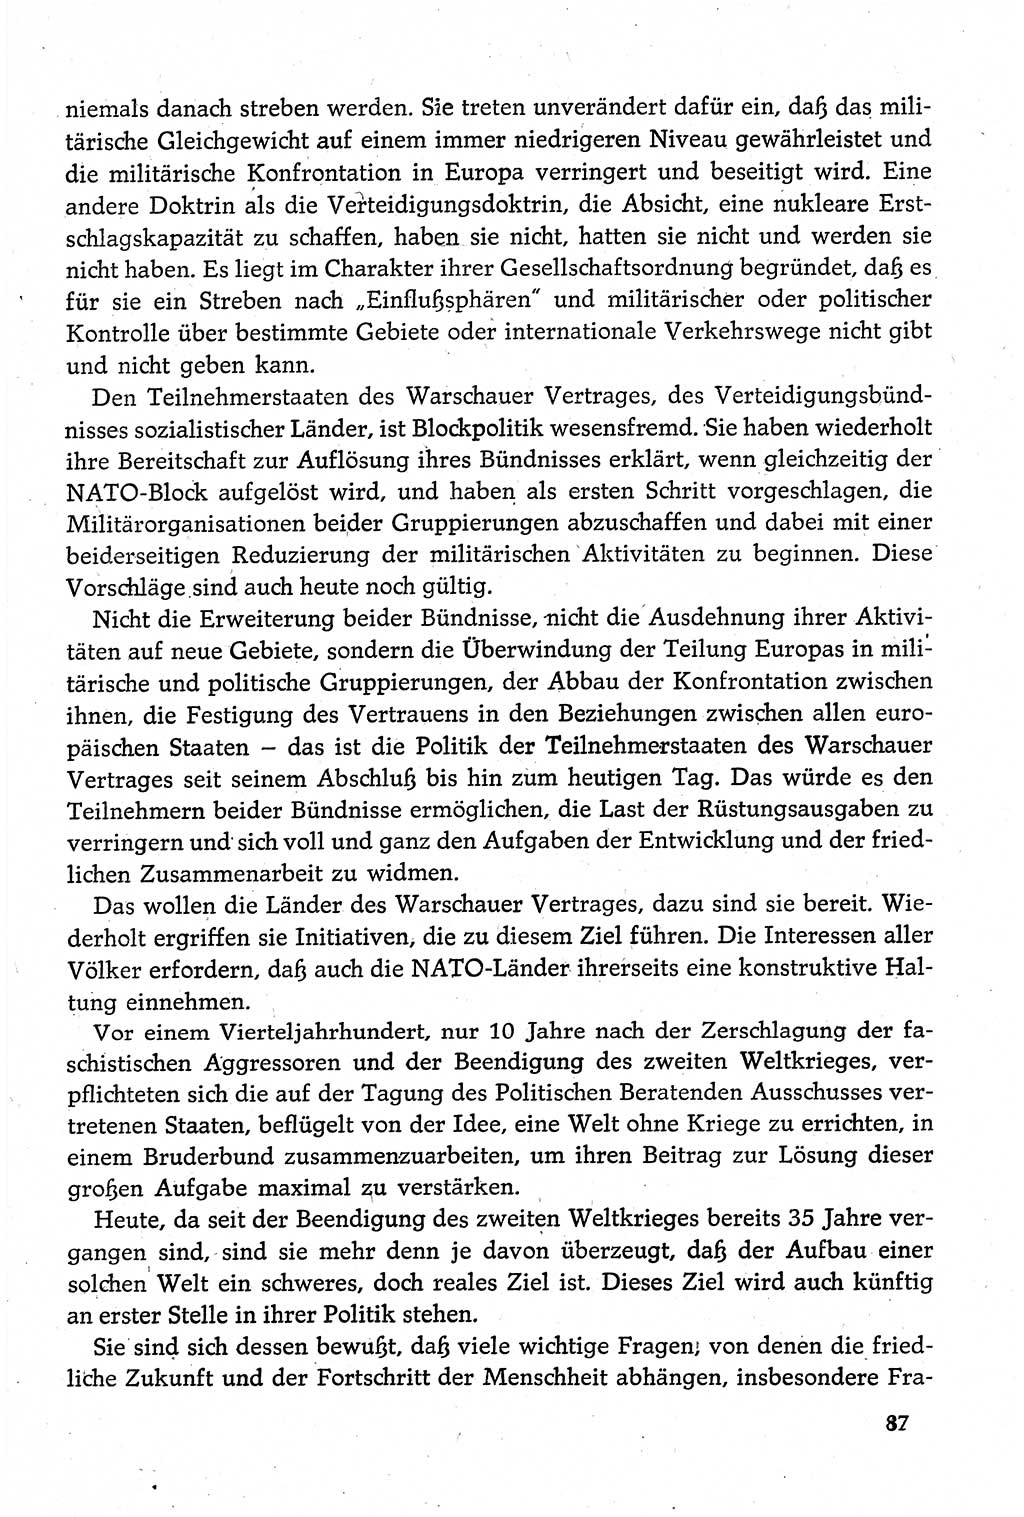 Dokumente der Sozialistischen Einheitspartei Deutschlands (SED) [Deutsche Demokratische Republik (DDR)] 1980-1981, Seite 87 (Dok. SED DDR 1980-1981, S. 87)